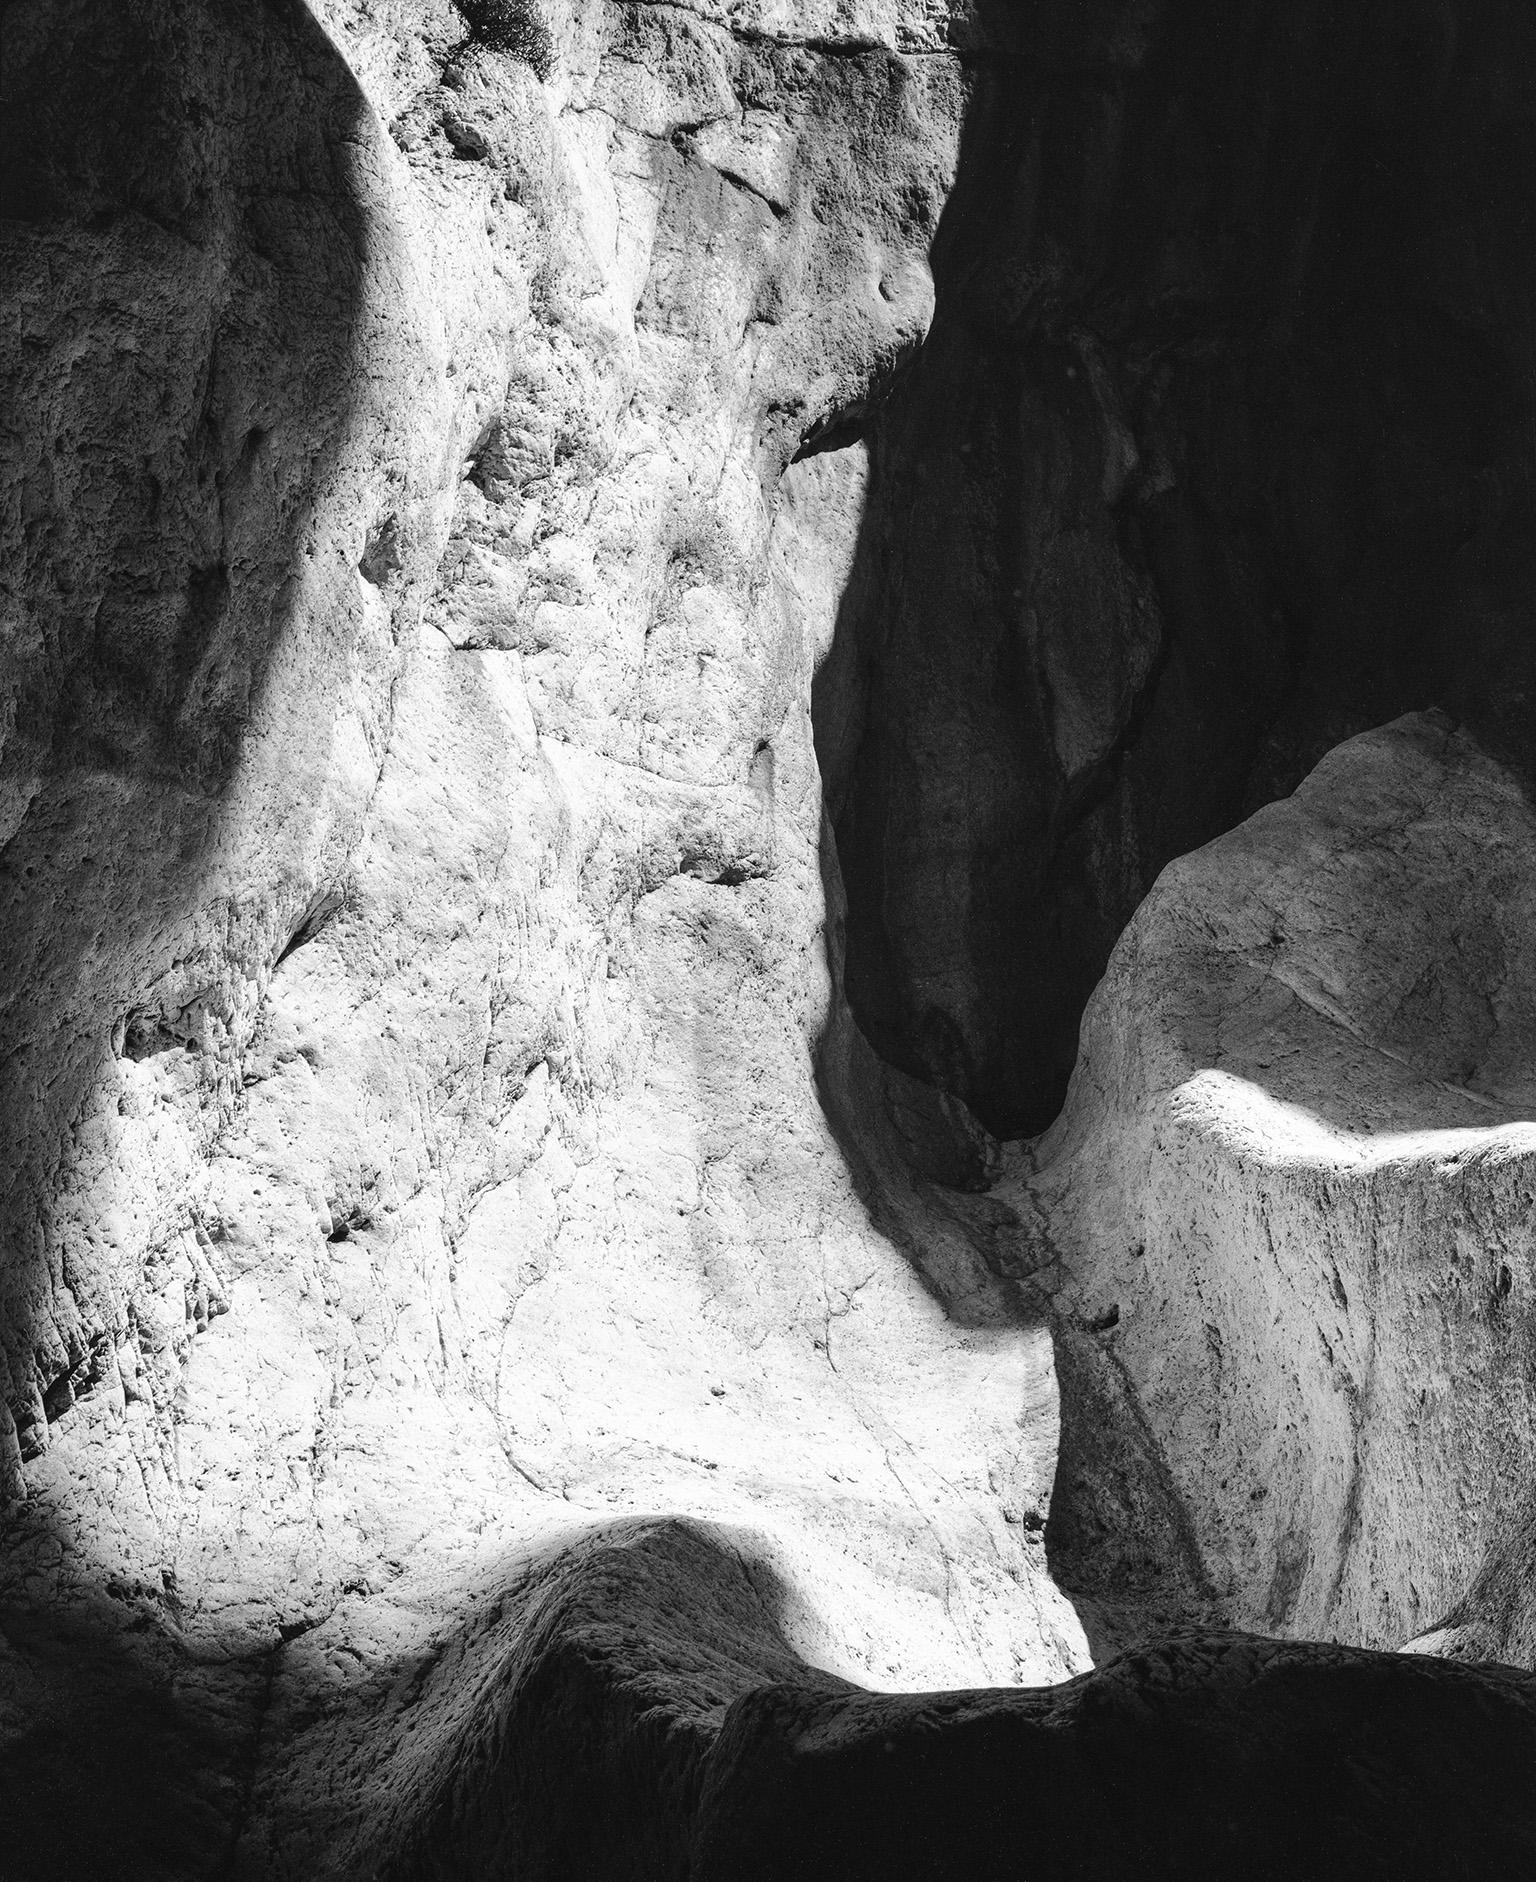 Landscape Photograph John Stathatos - Earth VI - Photographie en noir et blanc, Grotte, Roches, Paysage naturel, Lumière